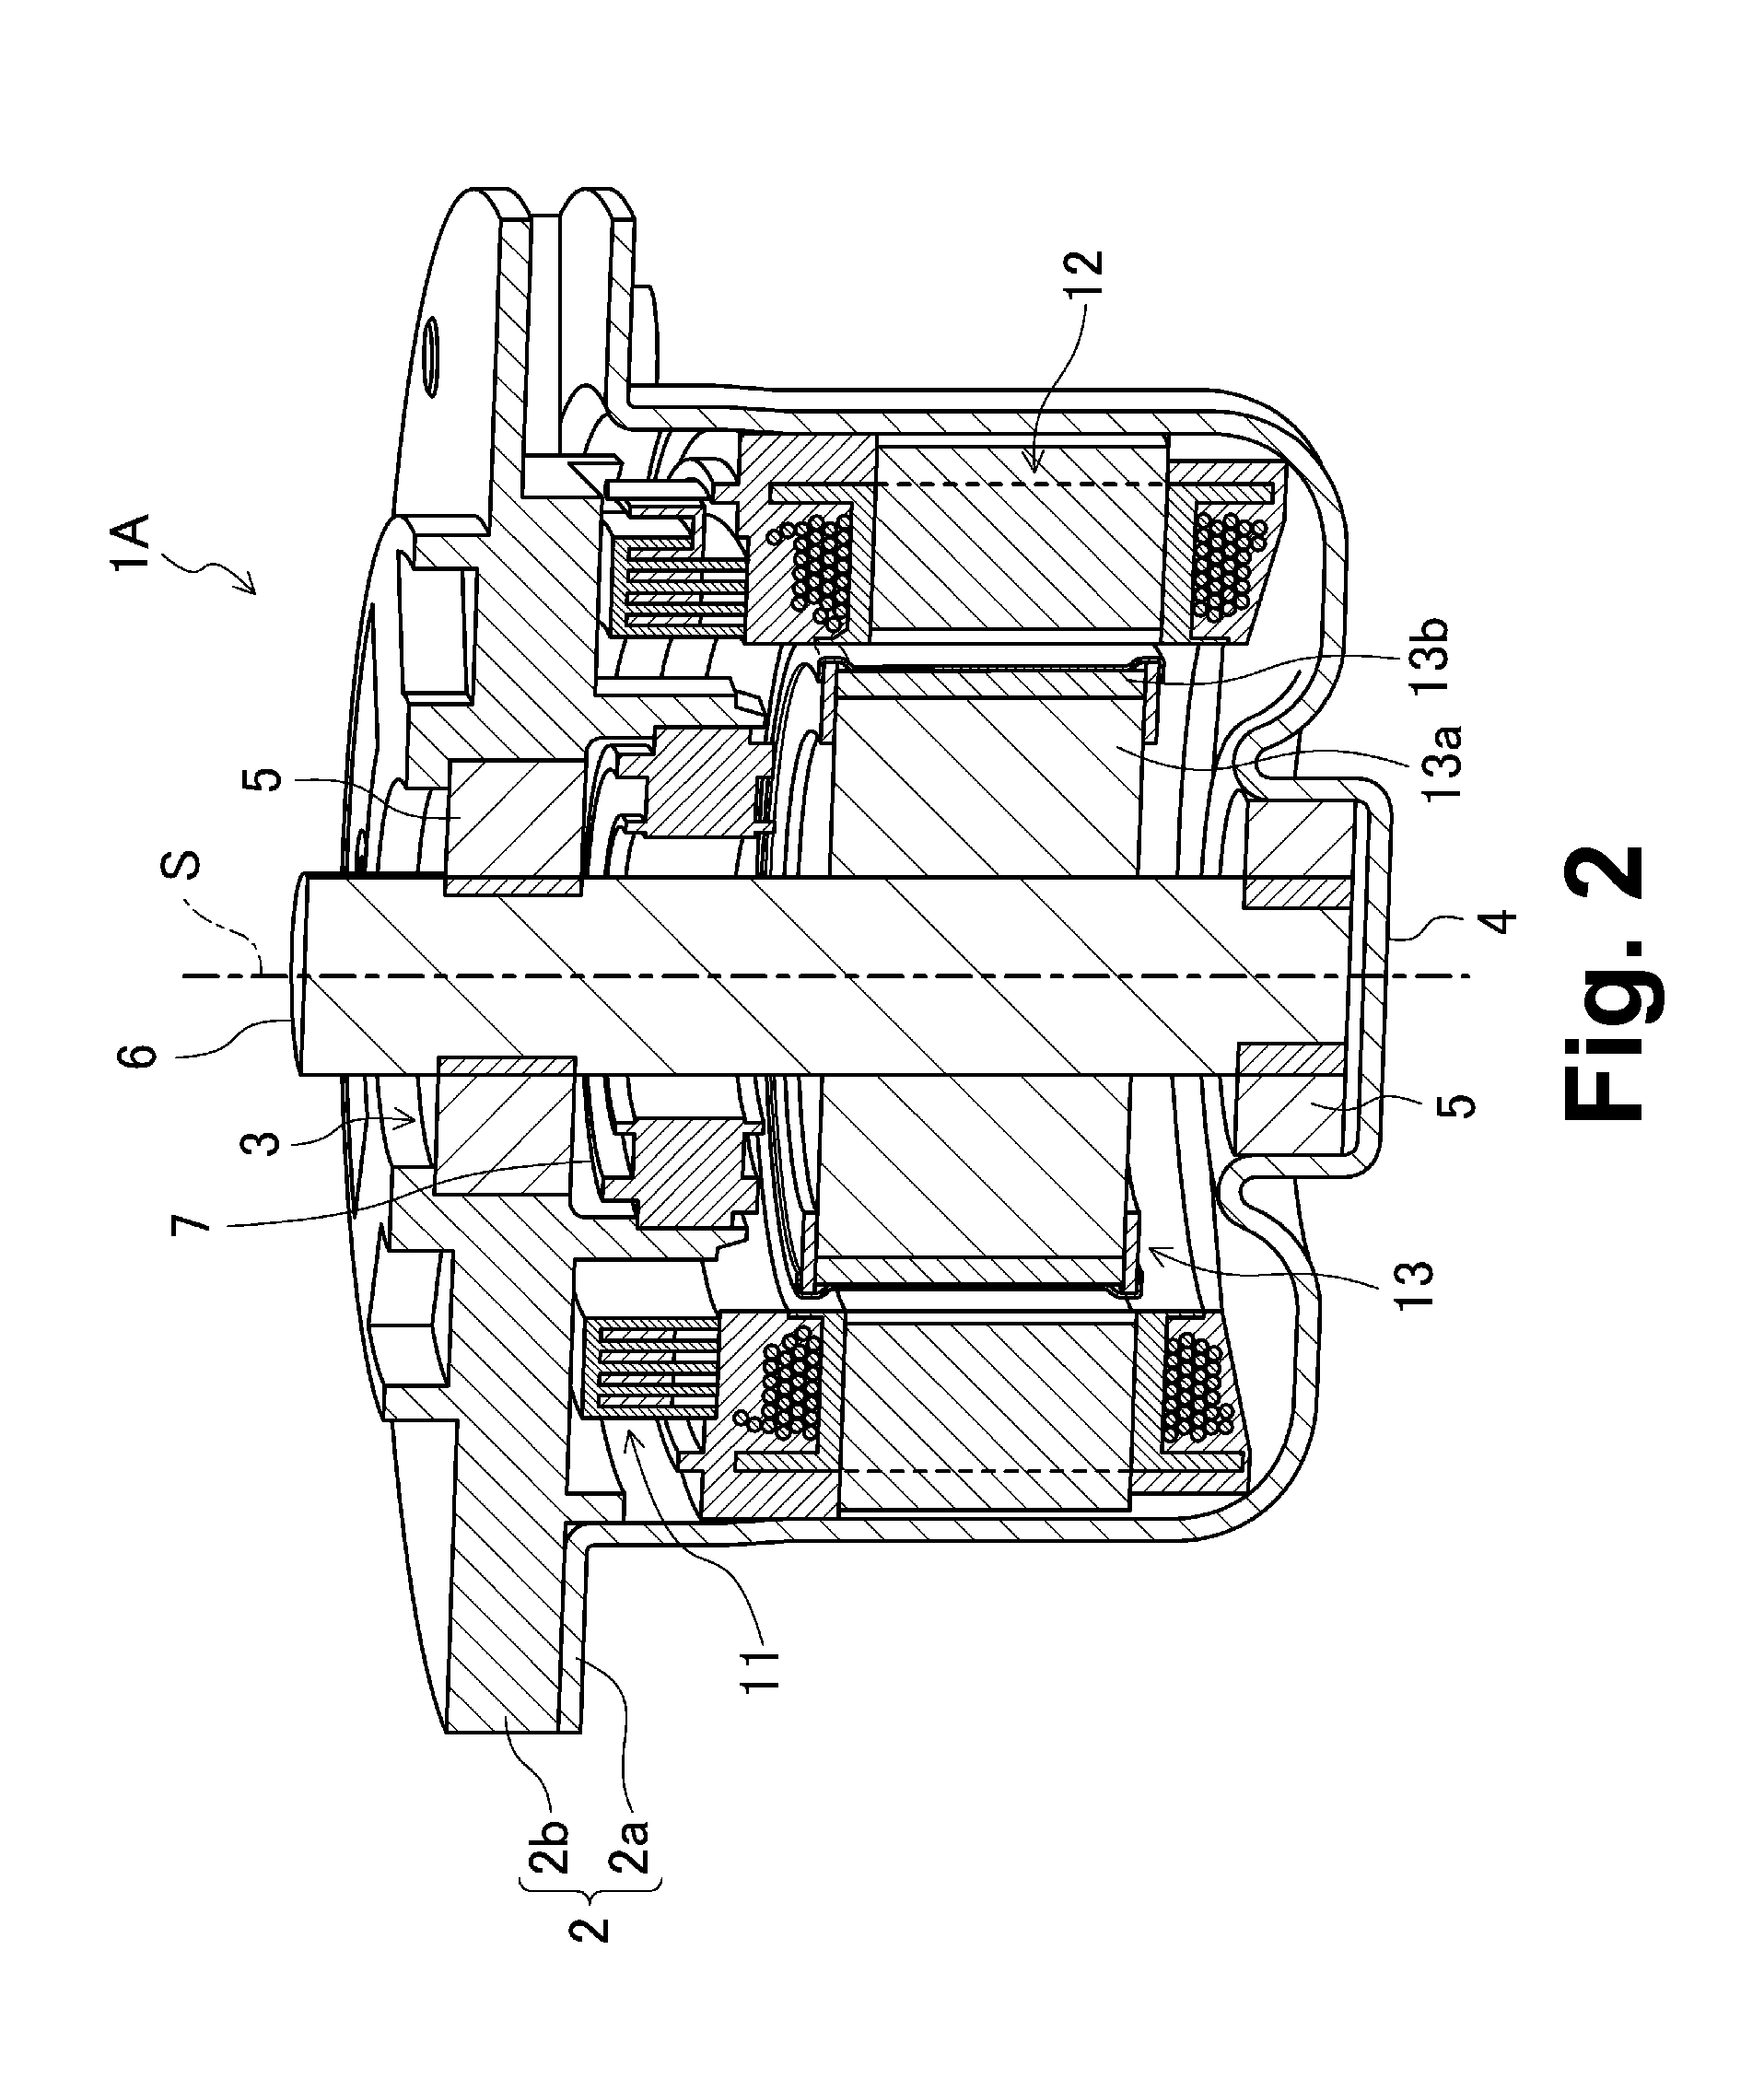 Stator segment and motor